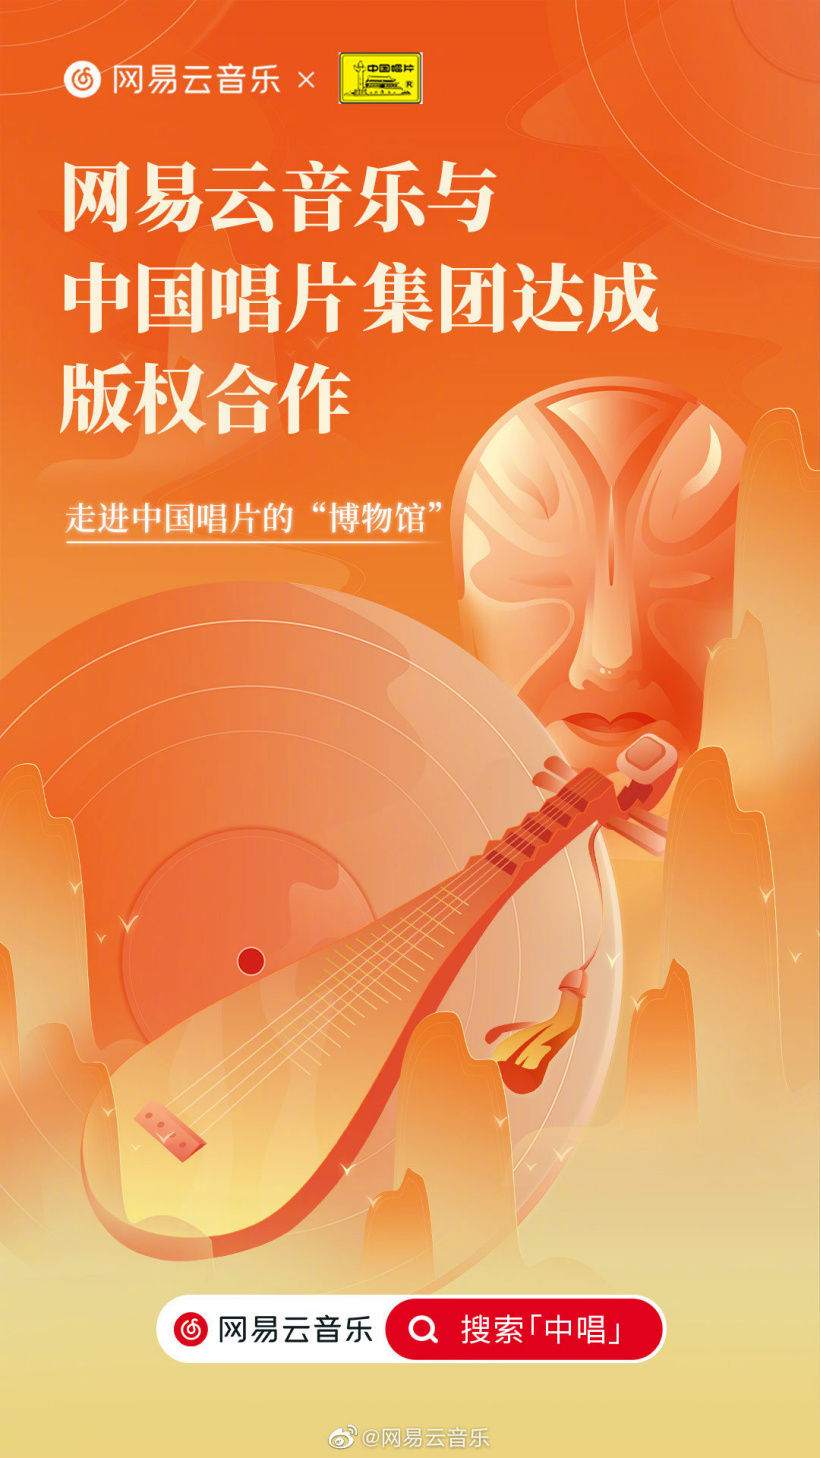 网易云音乐宣布与中国唱片集团达成版权合作 大量经典曲目上线